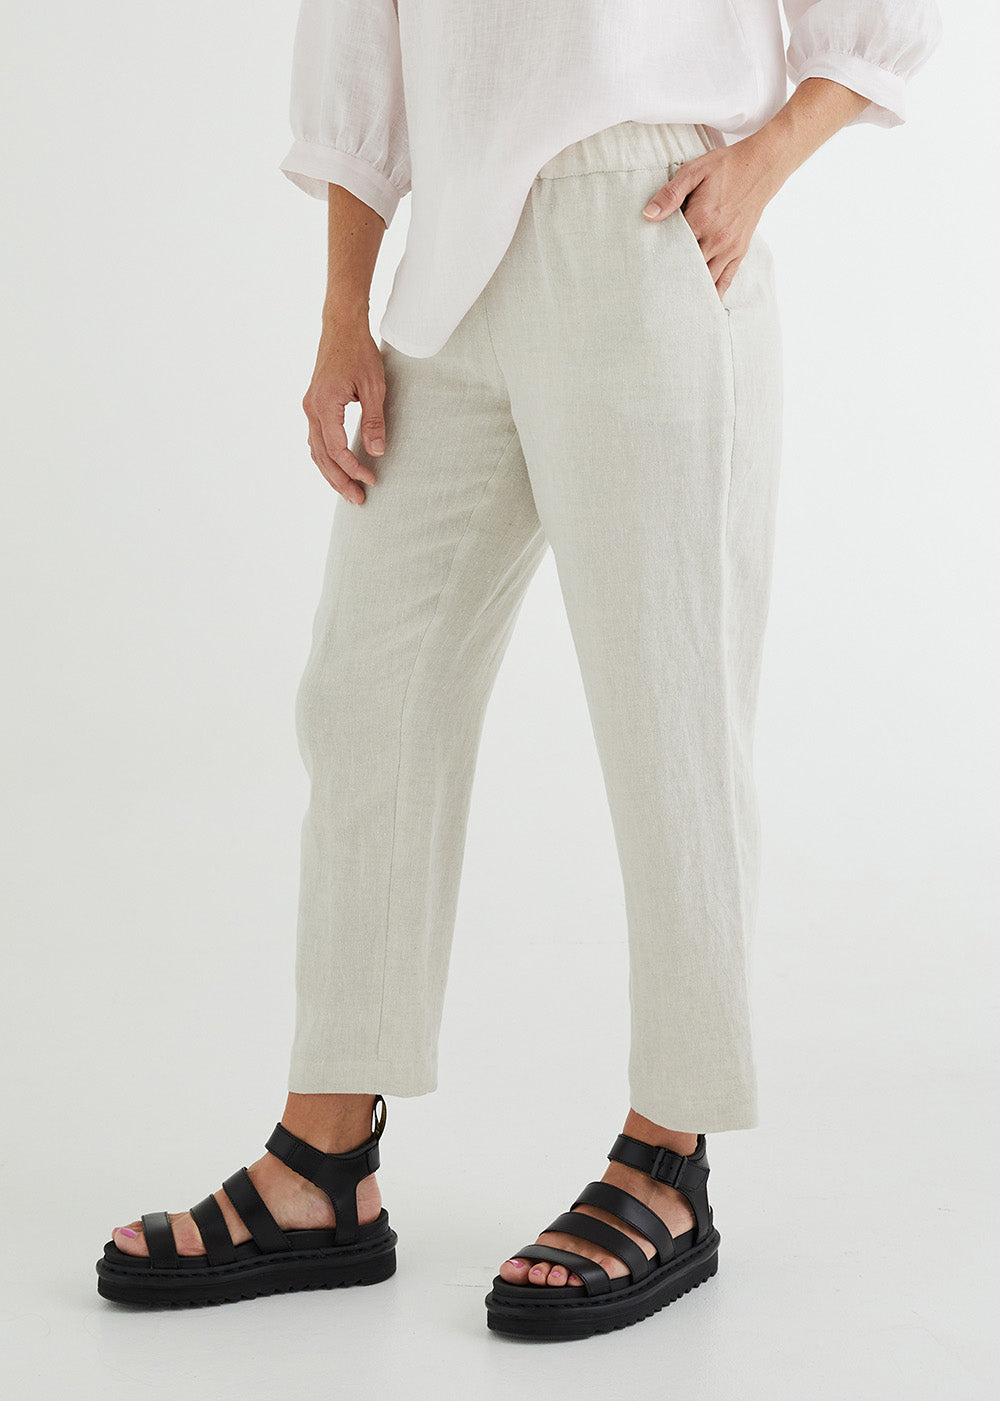 Live It Up Linen Pants White | White Fox Boutique